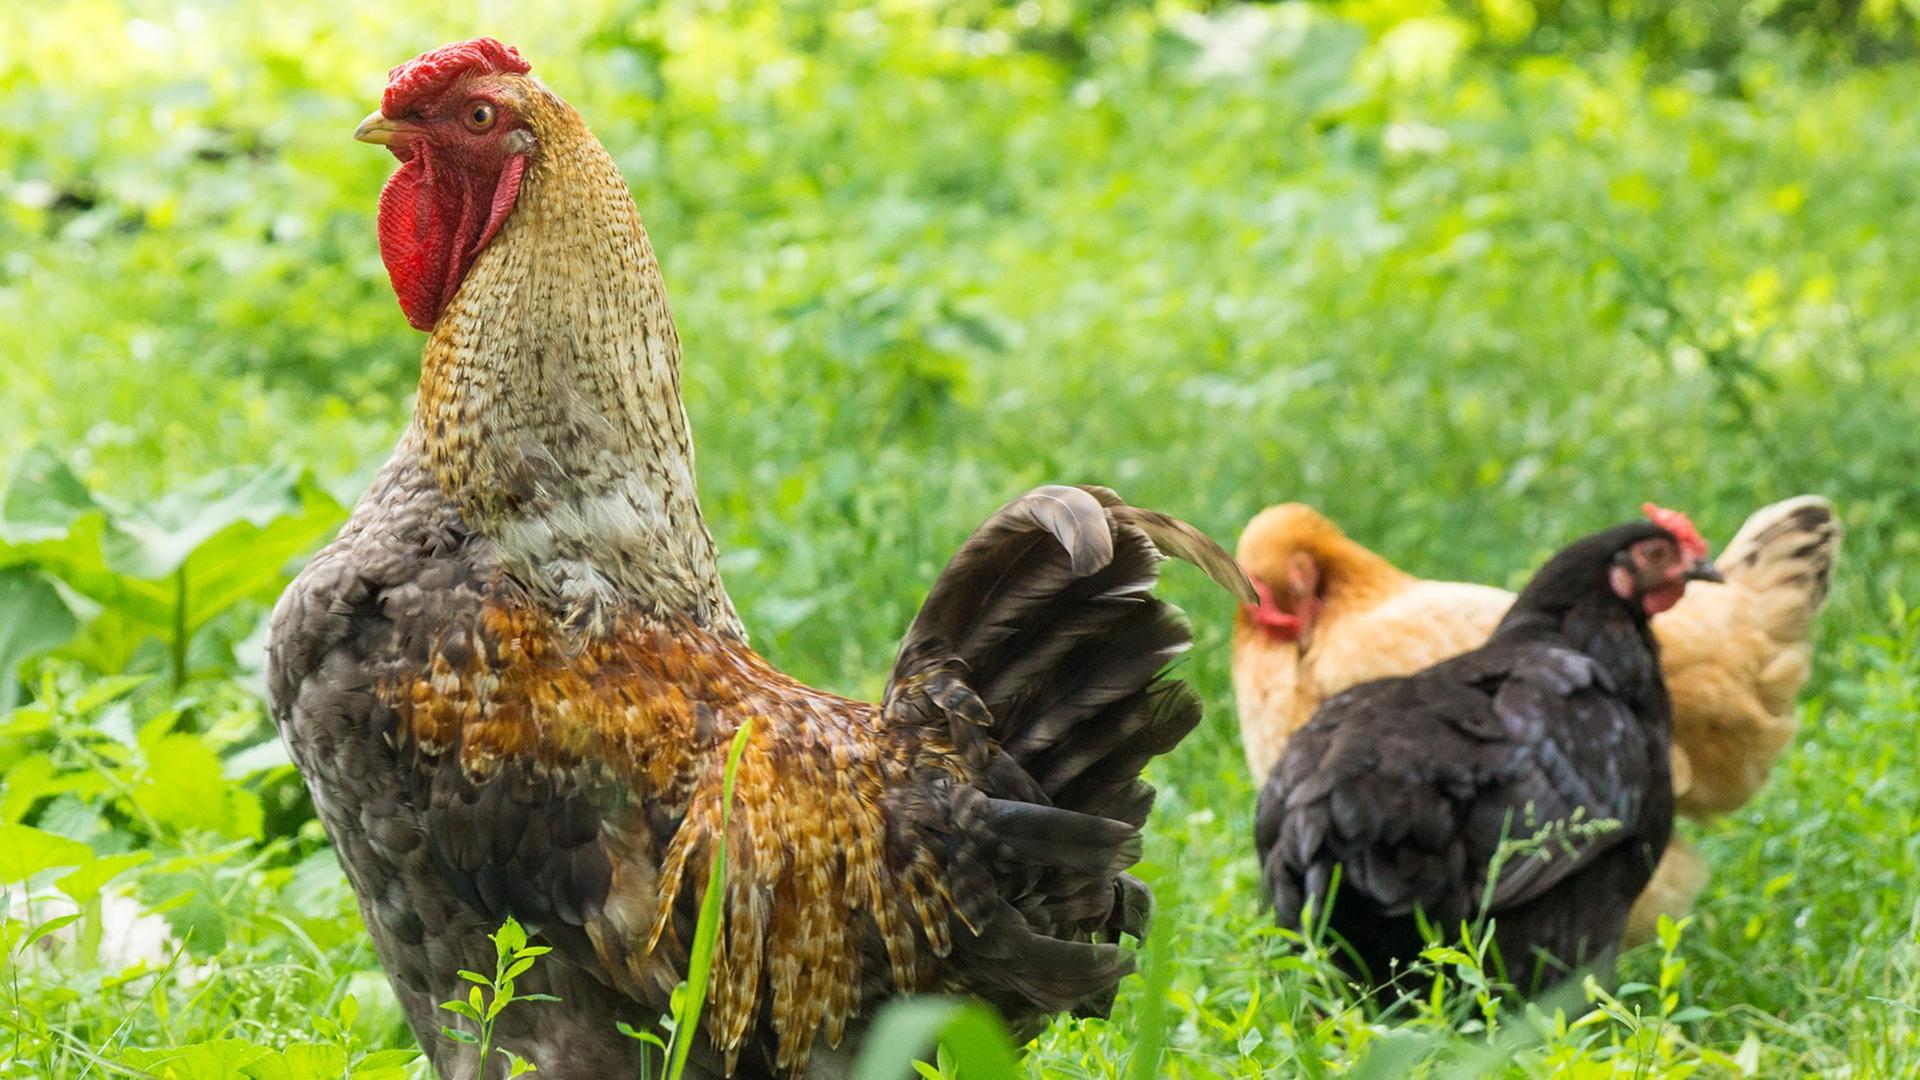 Mike und Raik aus Quitzow planen einen Hahnenkampf, der keine Geschlechtergrenzen kennt. Zu sehen: Ein Hahn und zwei Hühner im Gras. 